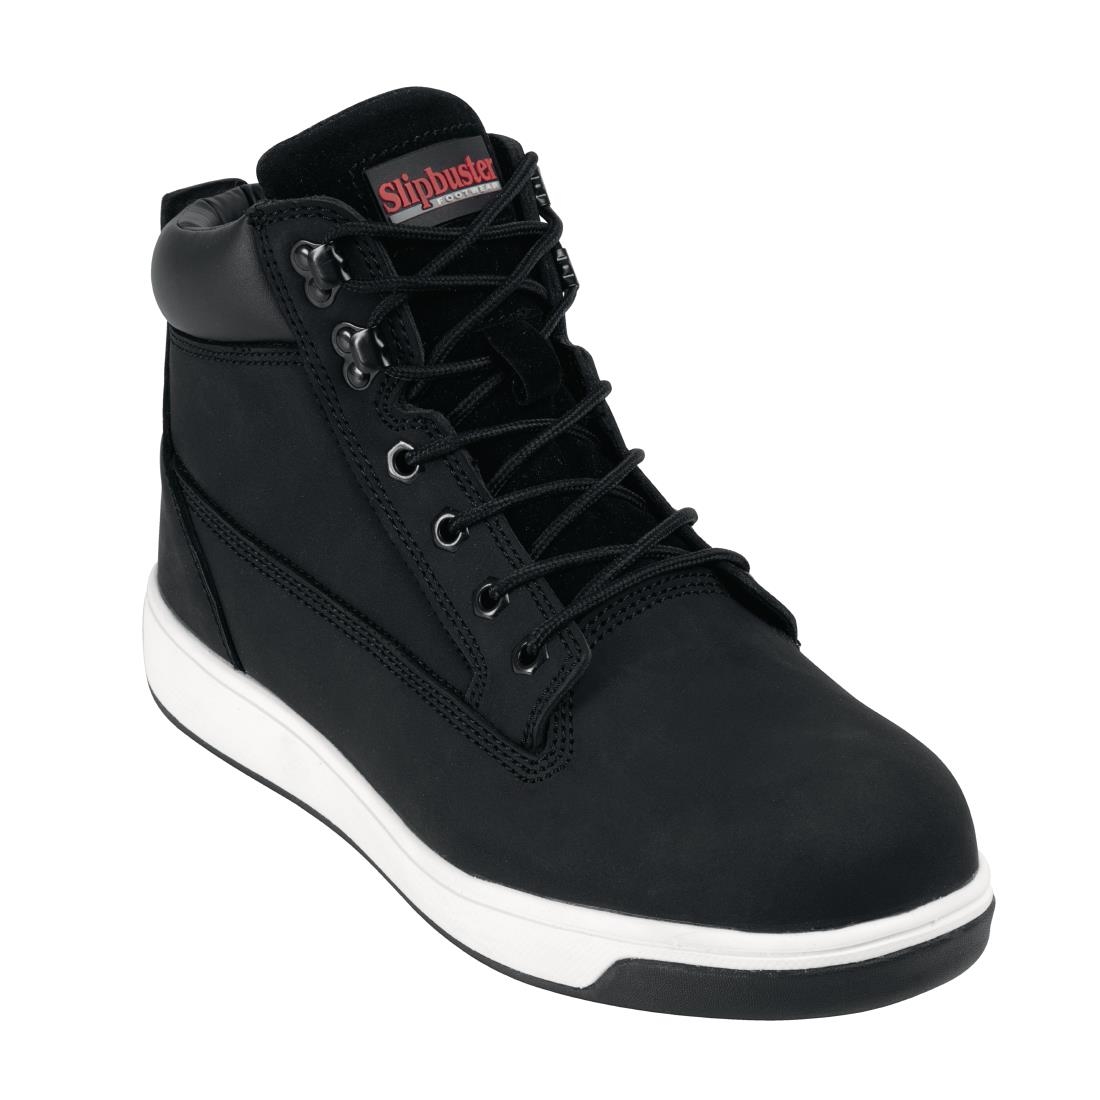 Slipbuster Sneaker Boots Black 46